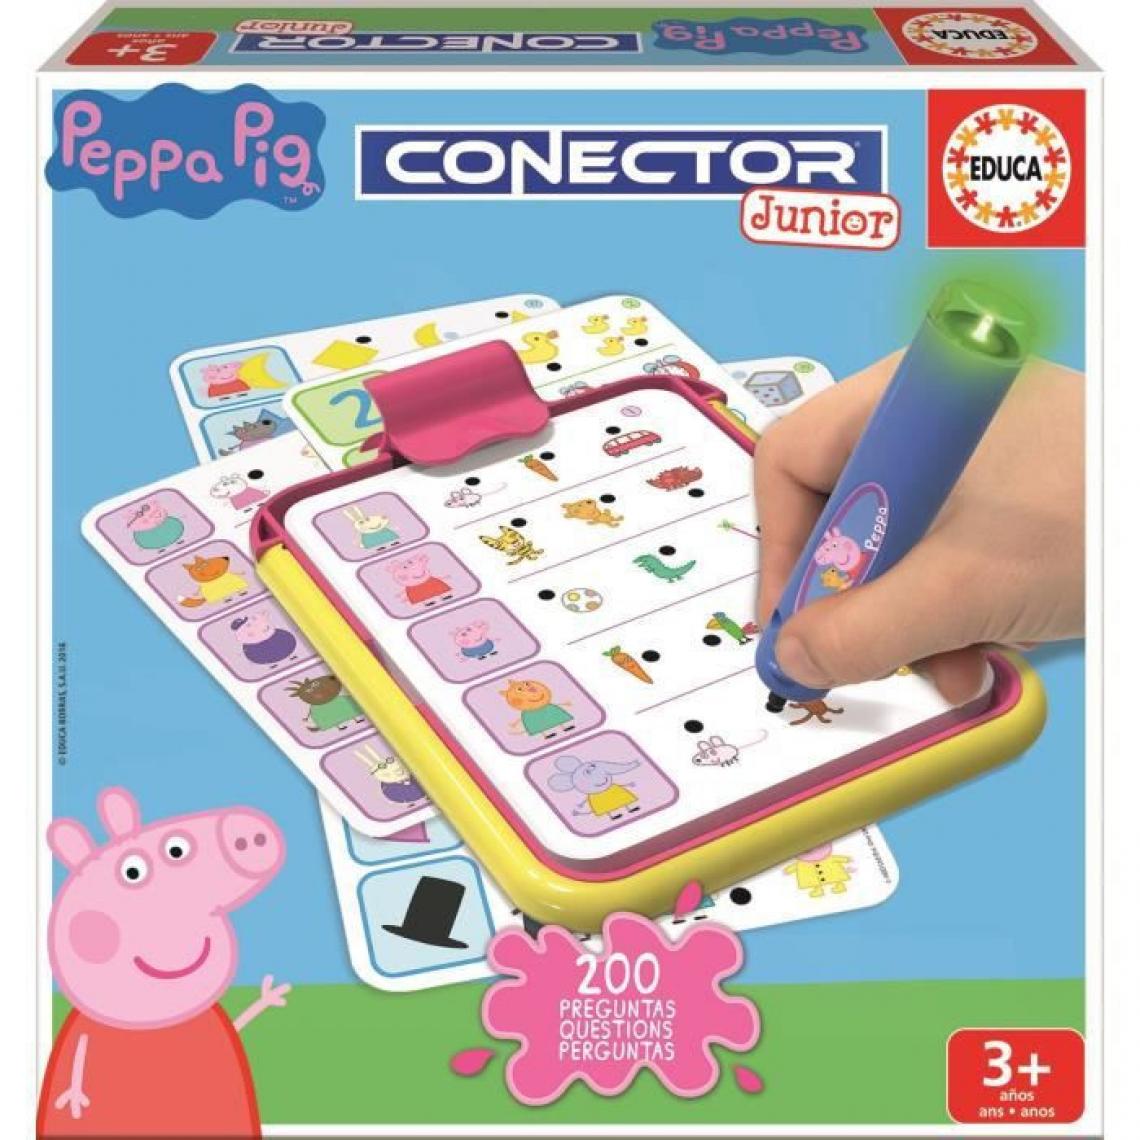 Educa - PEPPA PIG Conector Junior - Casse-tête